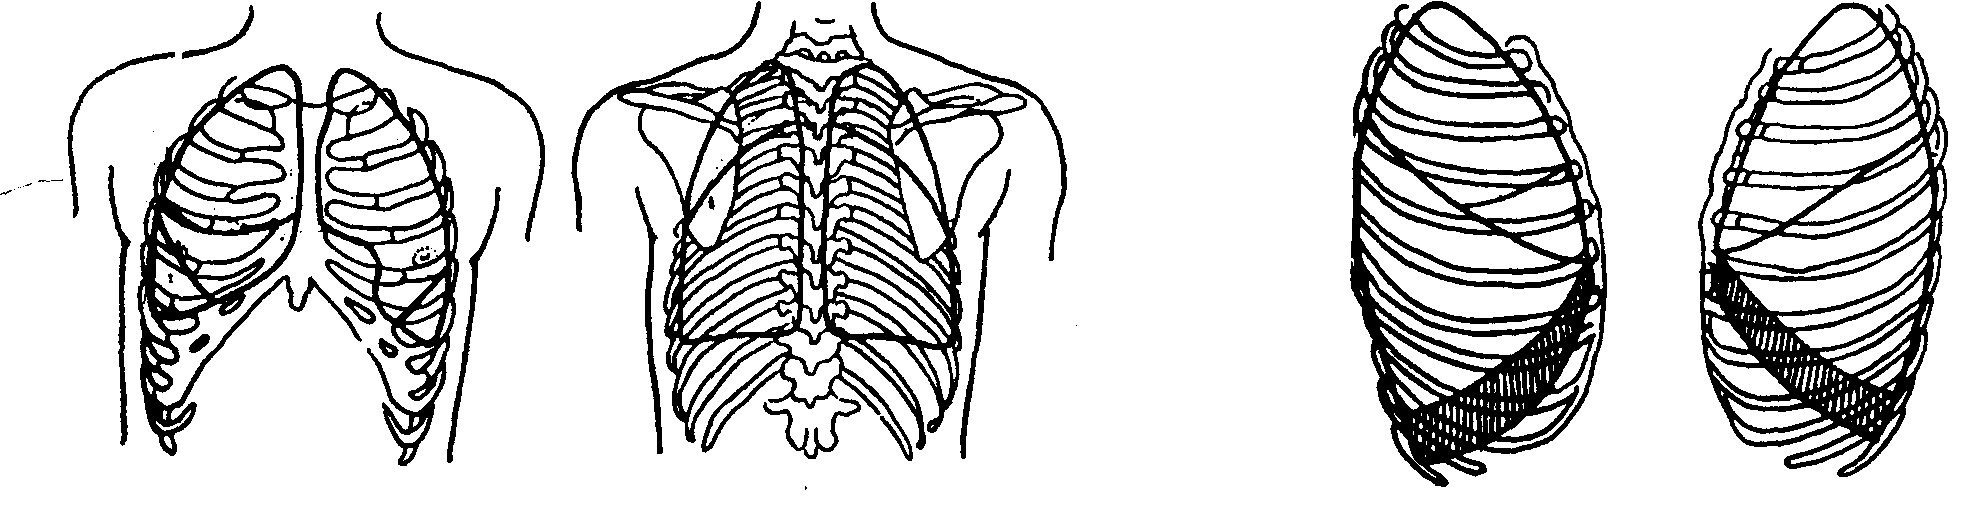 Площадь поверхности грудной клетки у человека. Схема грудной клетки в прямой проекции. Легочные борозды на грудной клетке. Проекции междолевых границ легких. Проекция легких и плевры на грудную клетку.